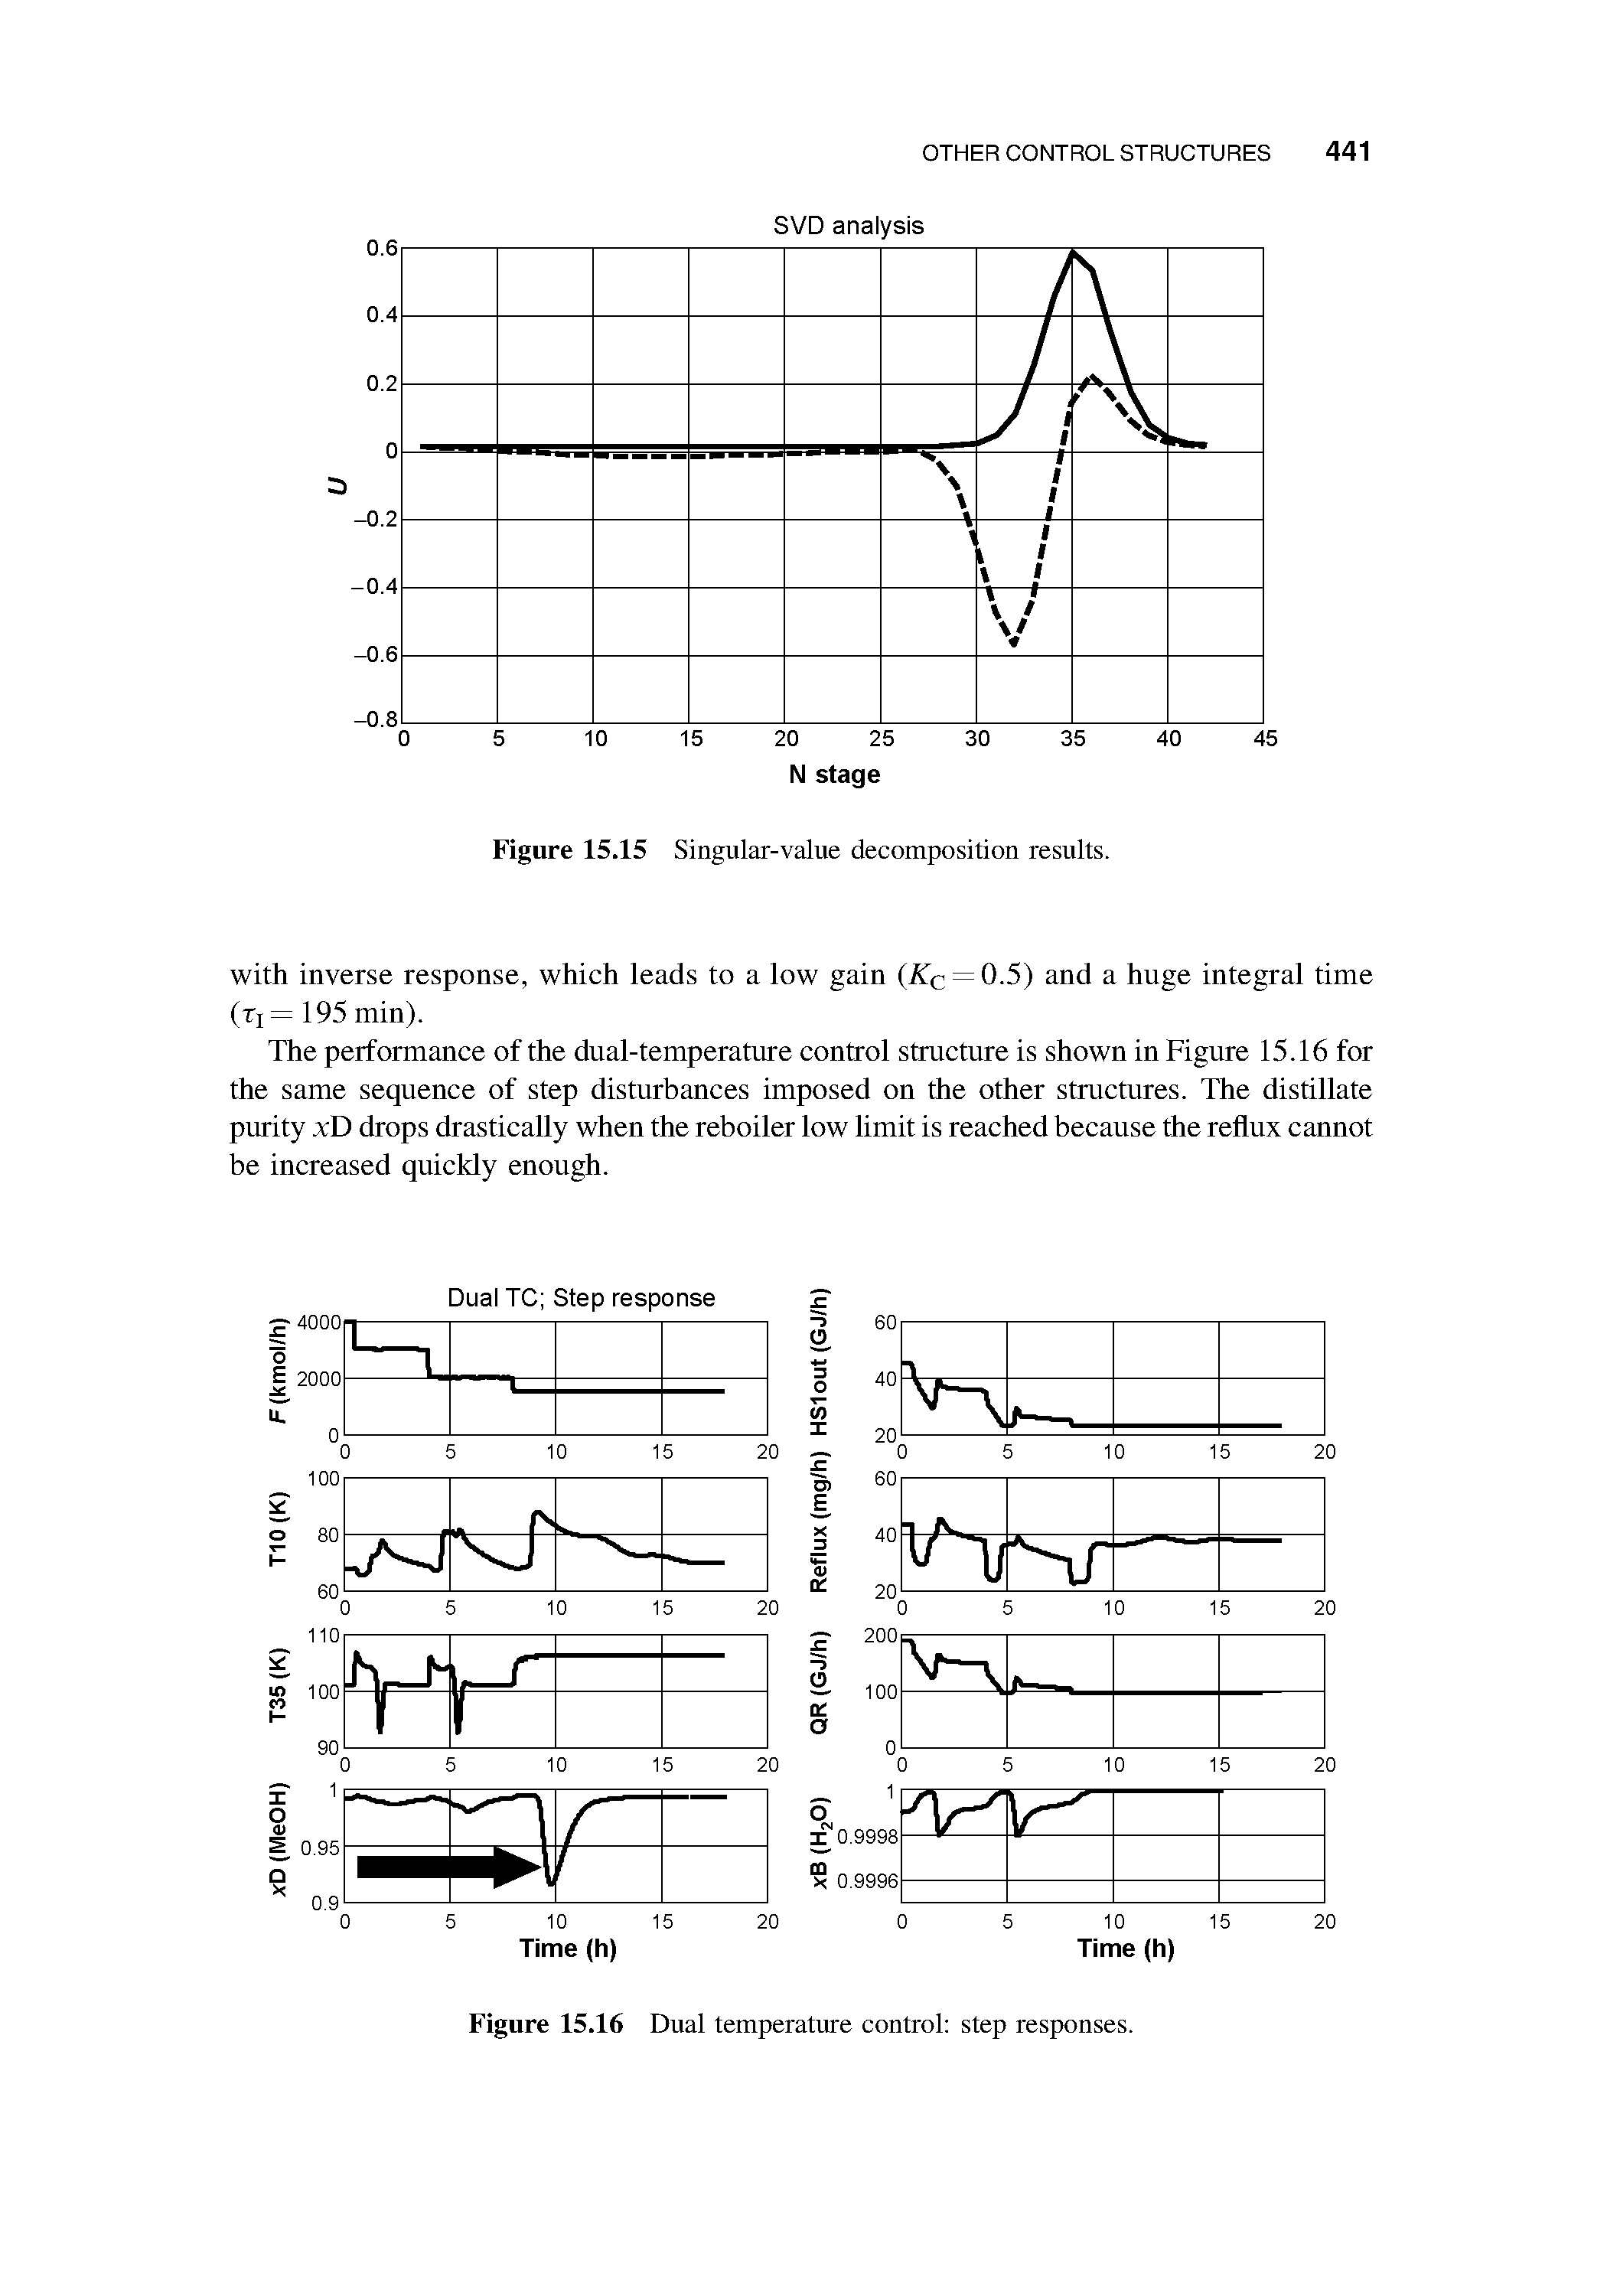 Figure 15.16 Dual temperature control step responses.